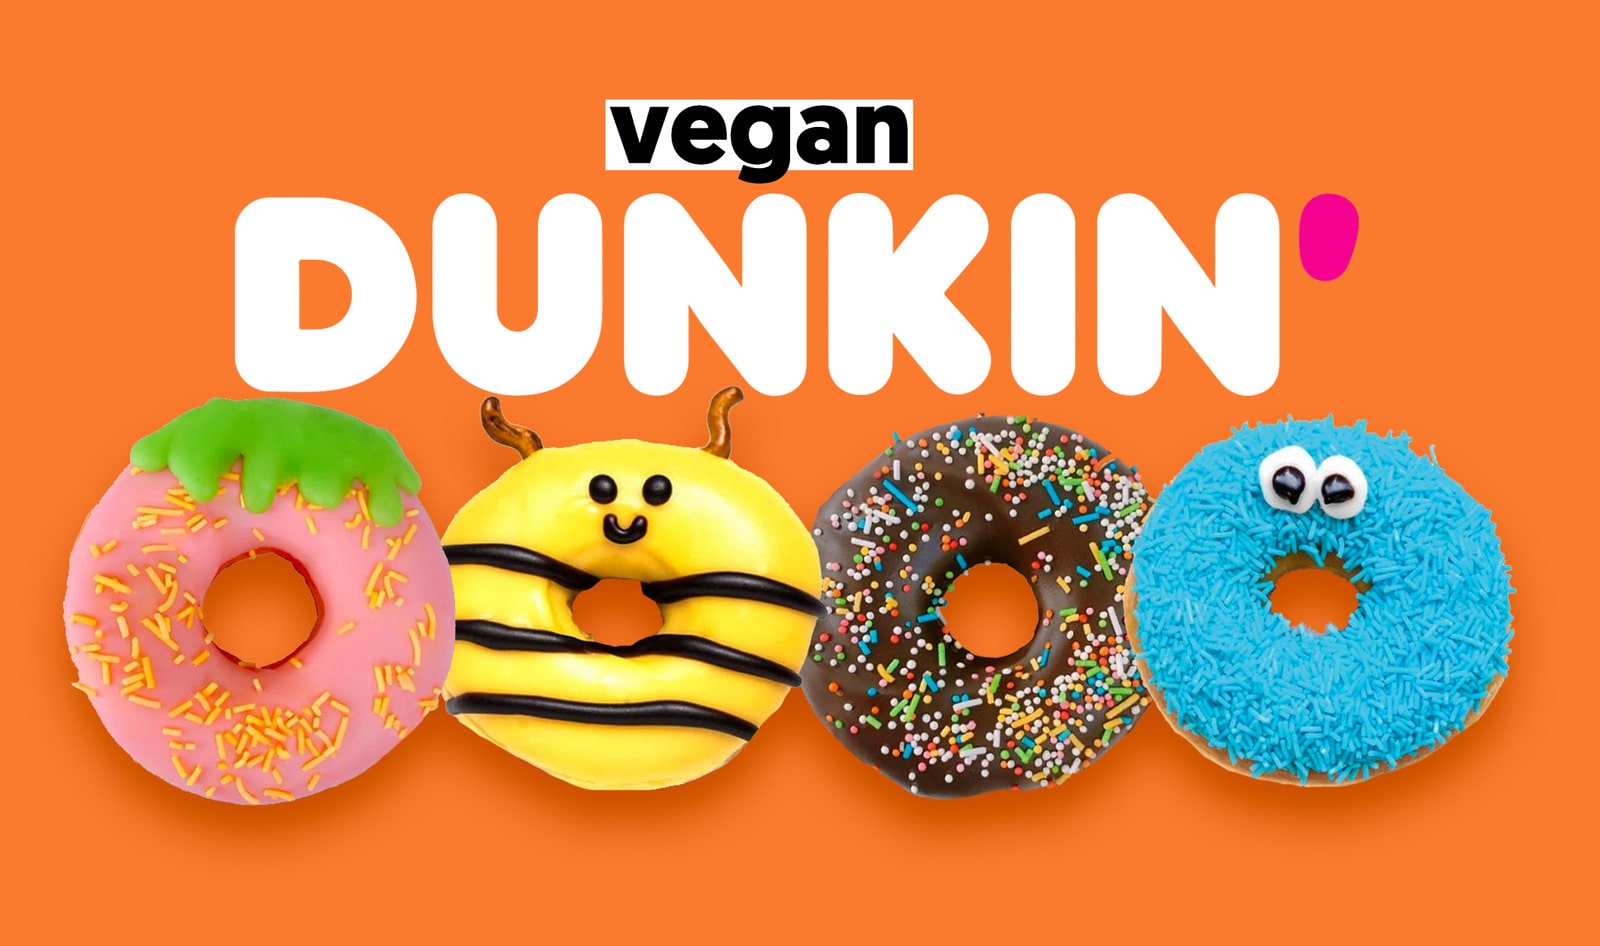 vegan dunkin' donuts